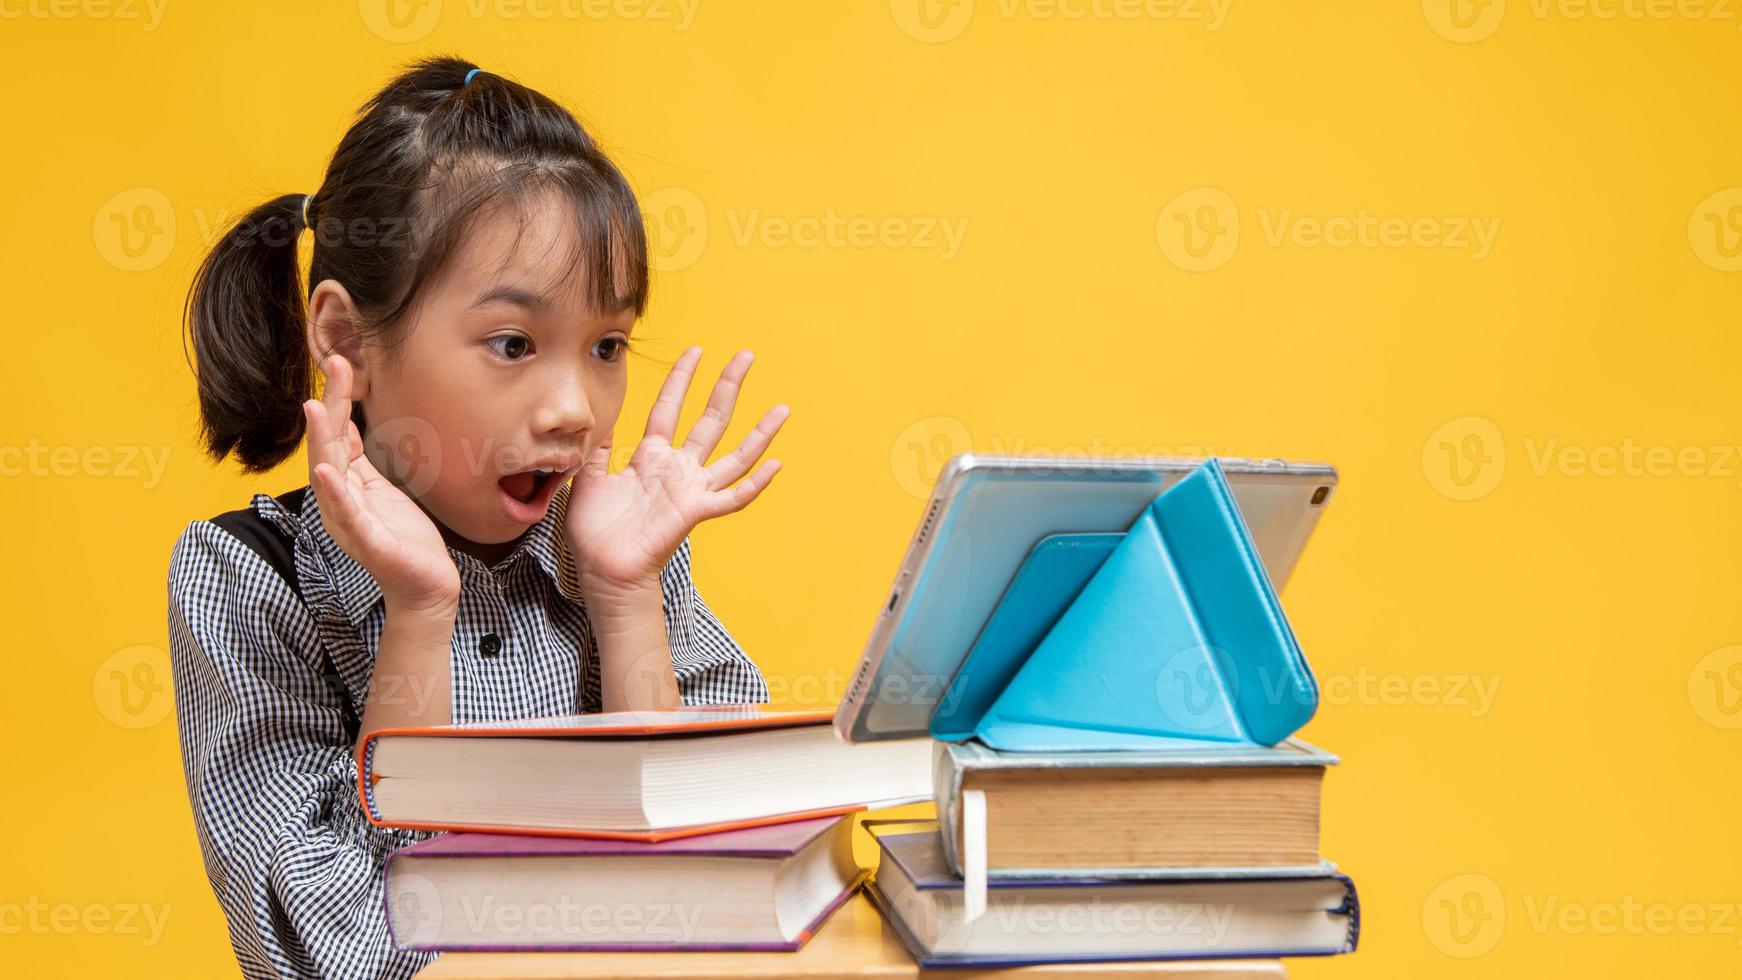 Thais meisje kijkt verbaasd naar tablet op stapels boeken met gele achtergrond foto